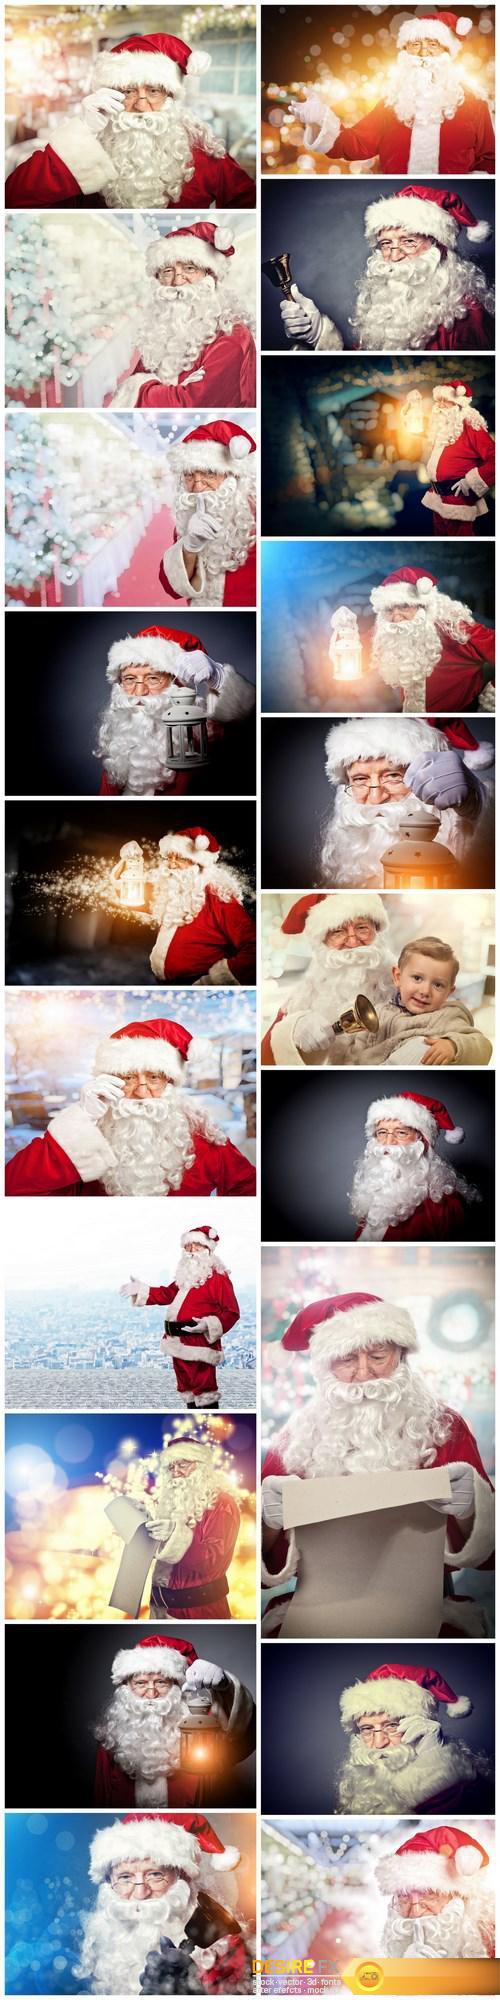 Dear Santa Claus 5 - 20xUHQ JPEG